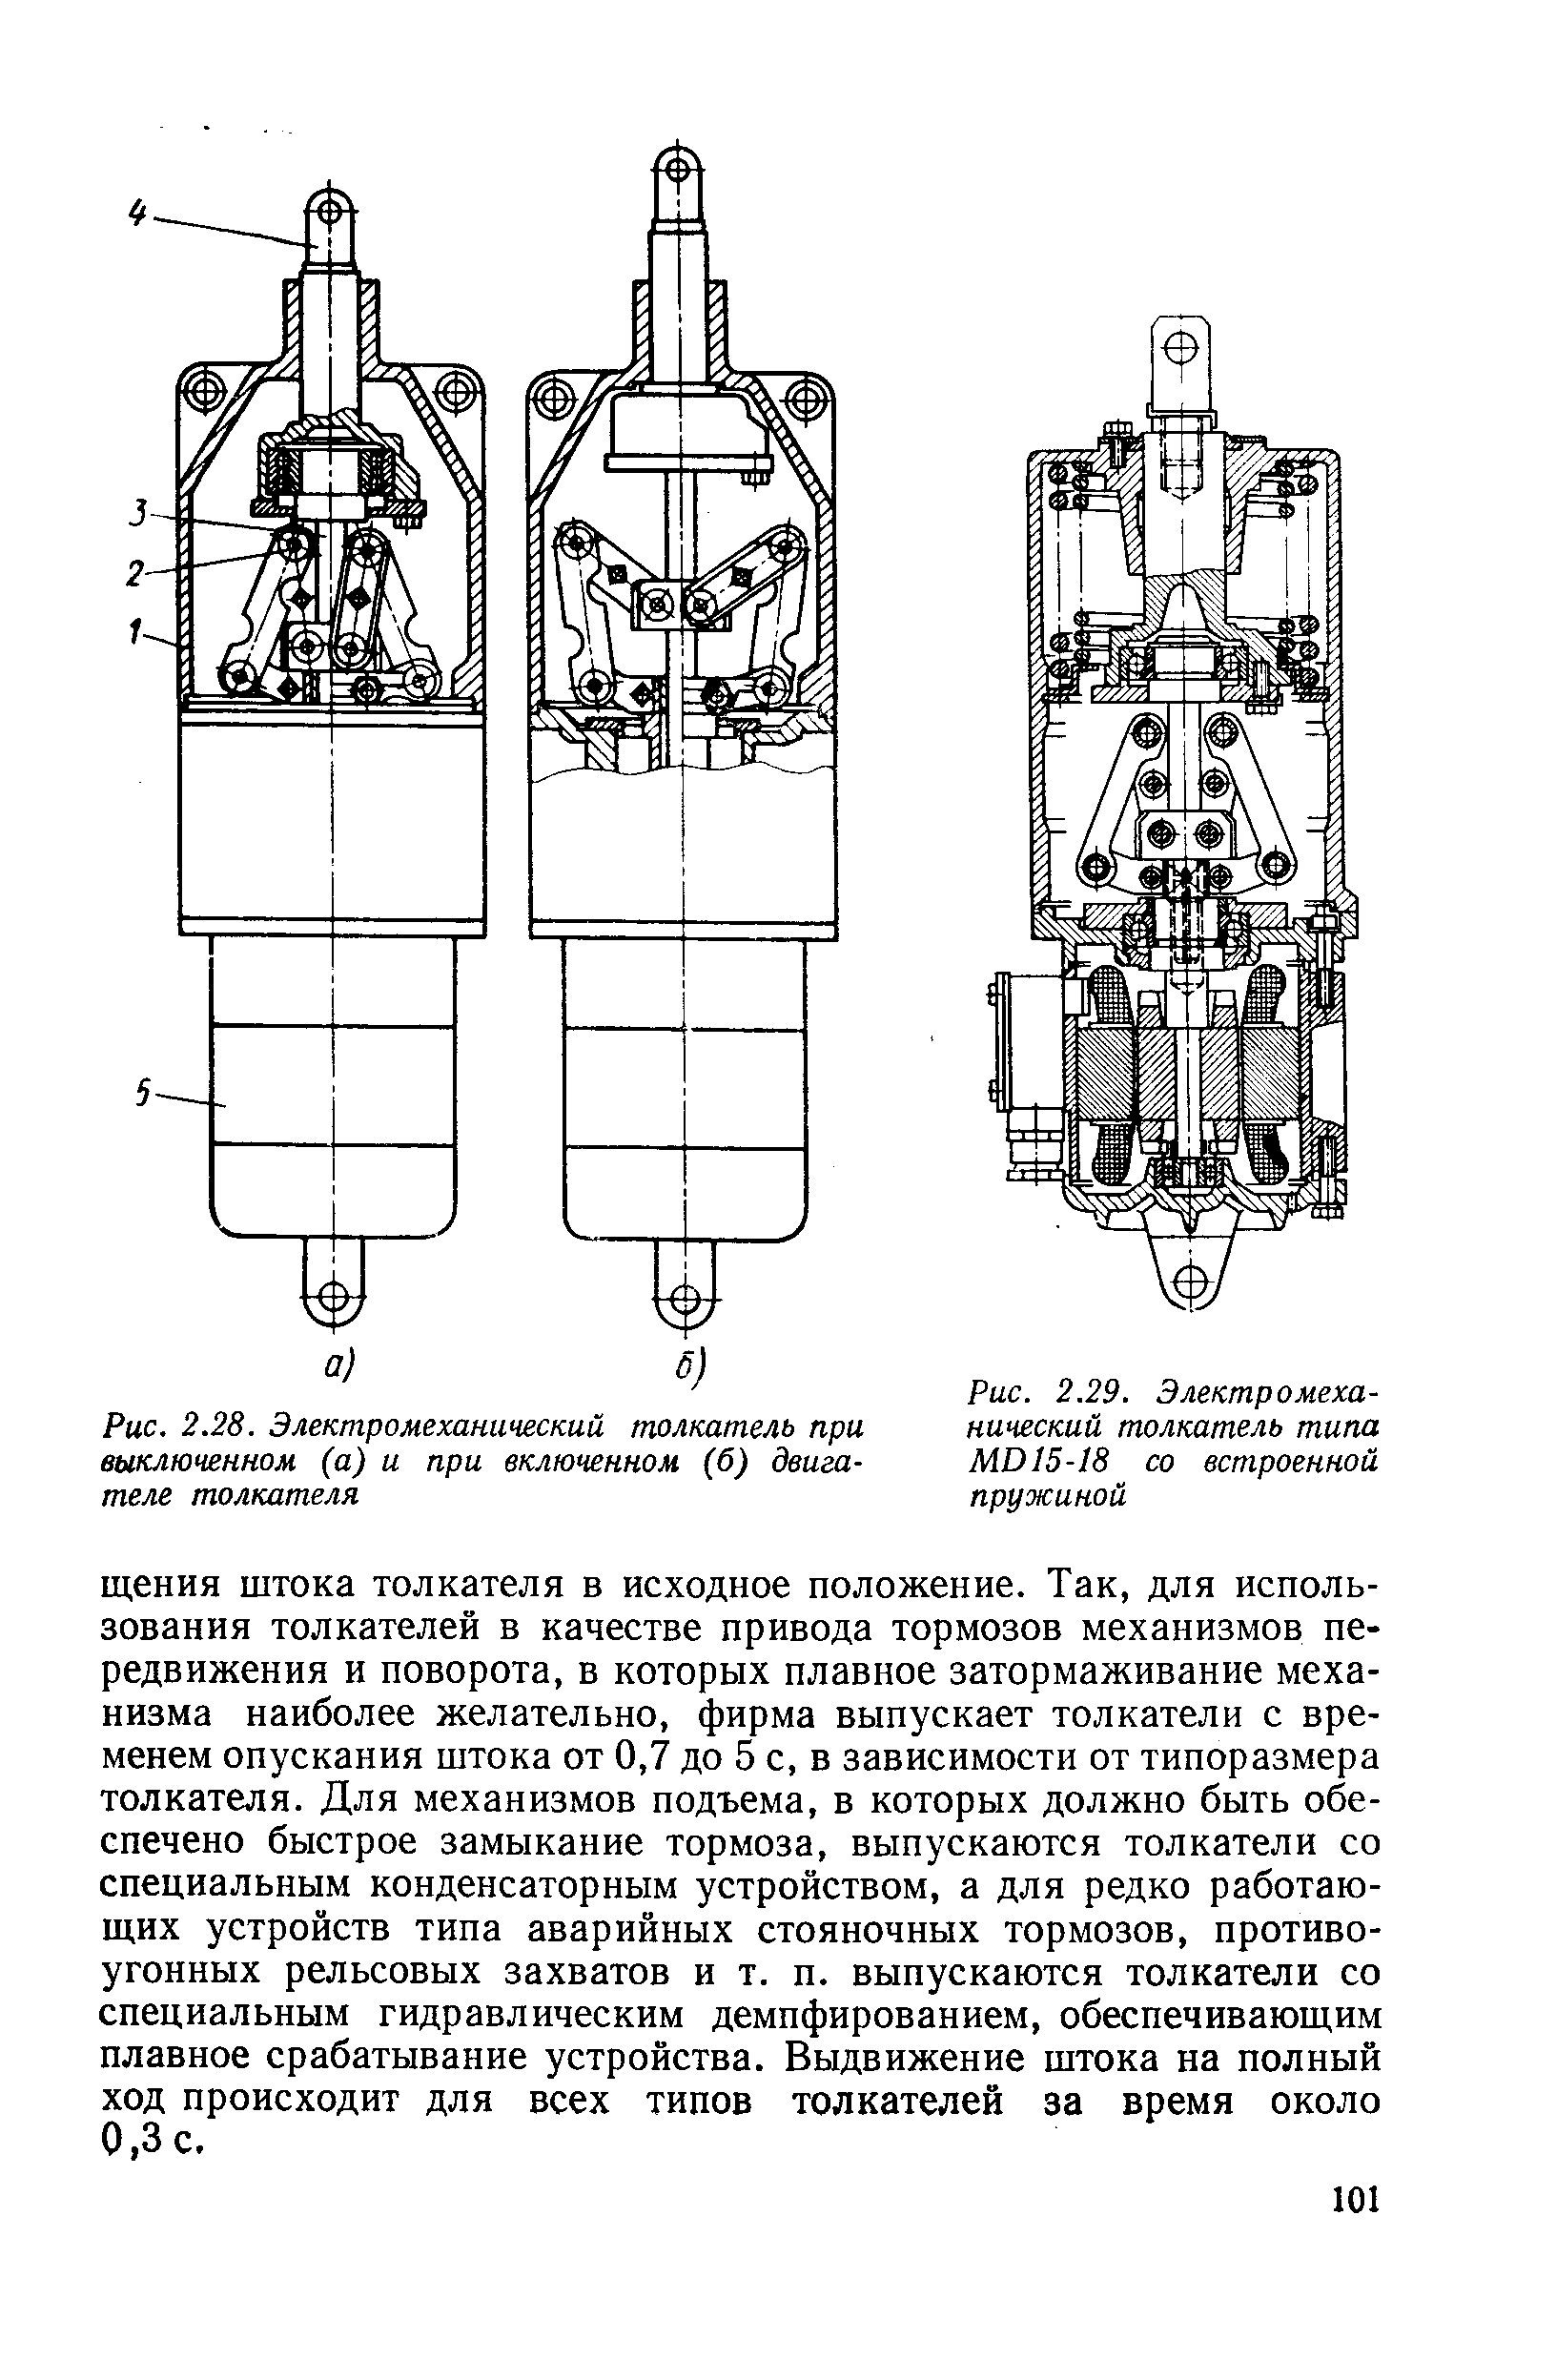 Рис. 2.28. Электромеханический толкатель при выключенном (а) и при включенном (б) двигателе толкателя
